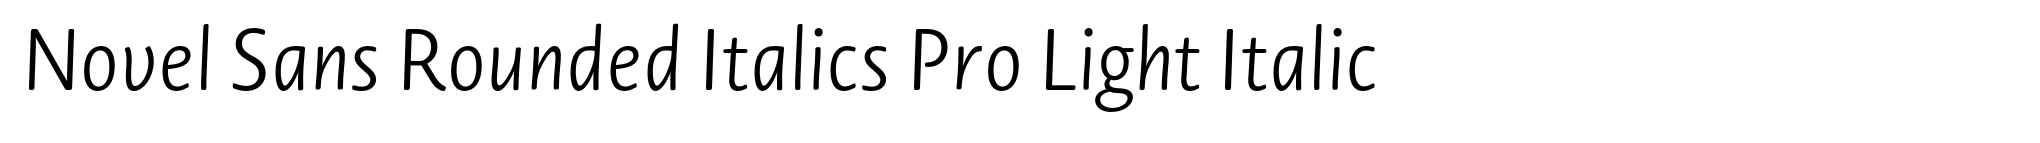 Novel Sans Rounded Italics Pro Light Italic image